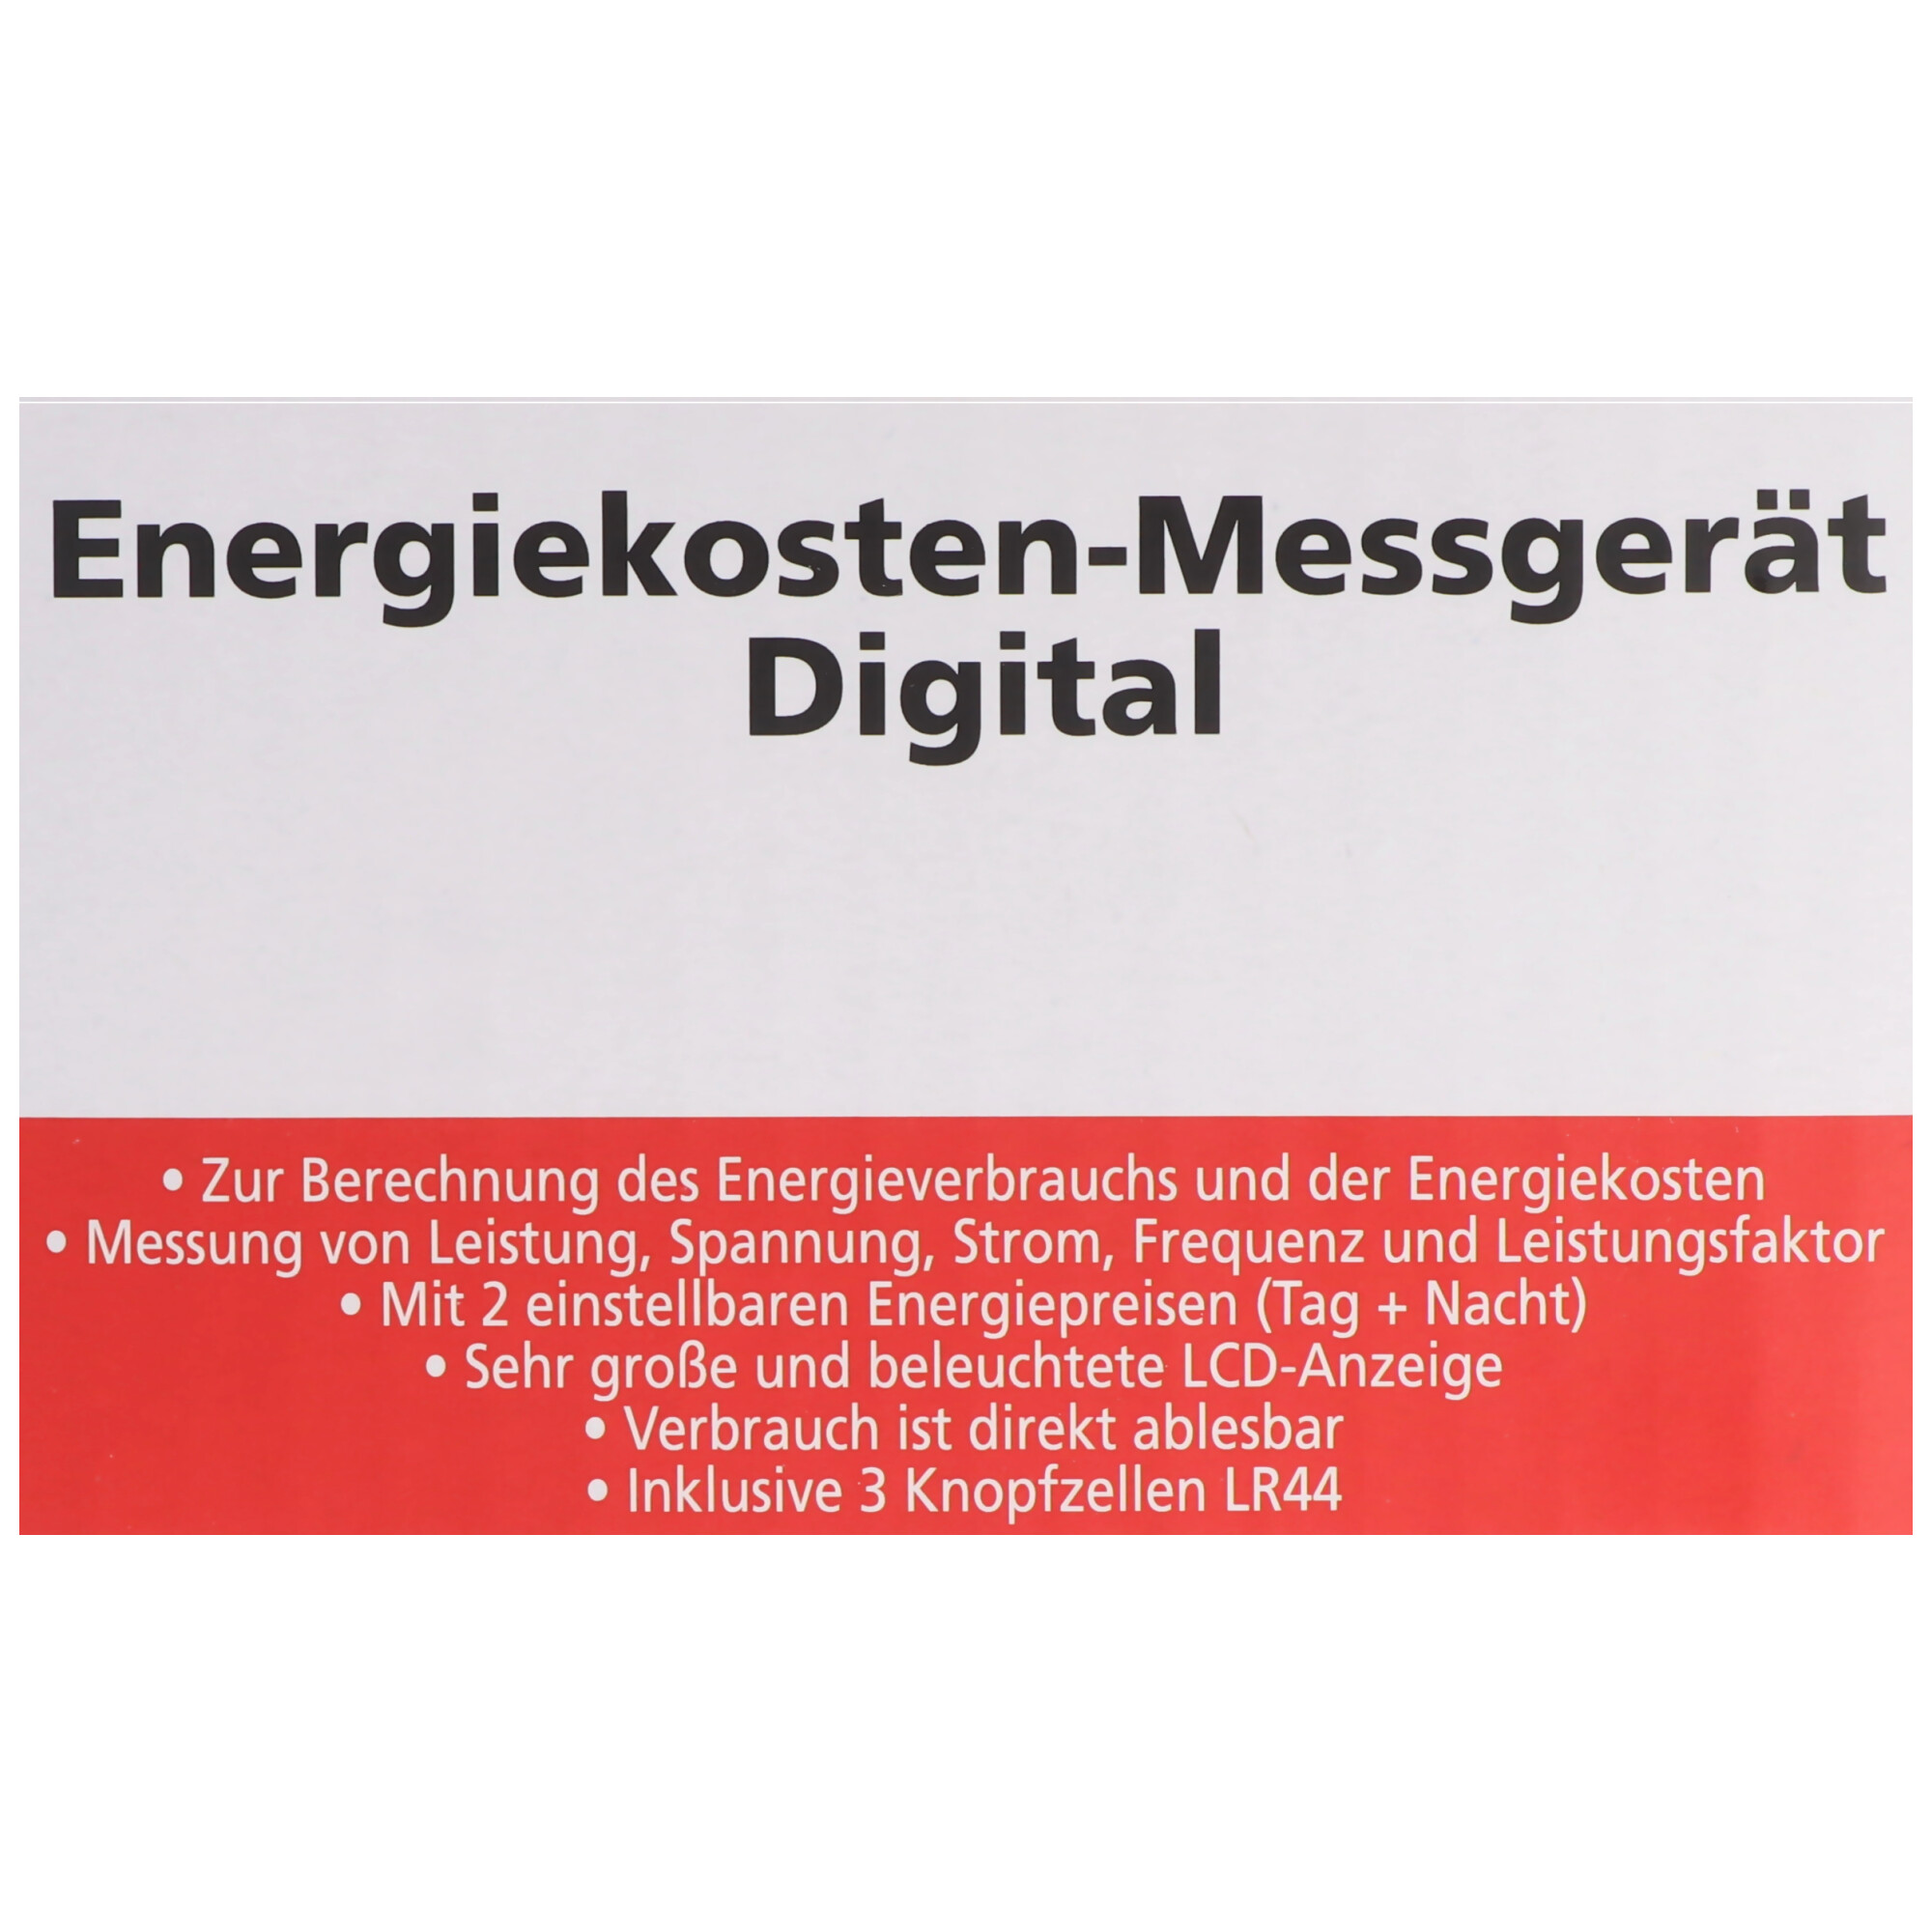 Messgerät Energiekosten Digital zur Berechnung des Energieverbrauchs und der Energiekosten